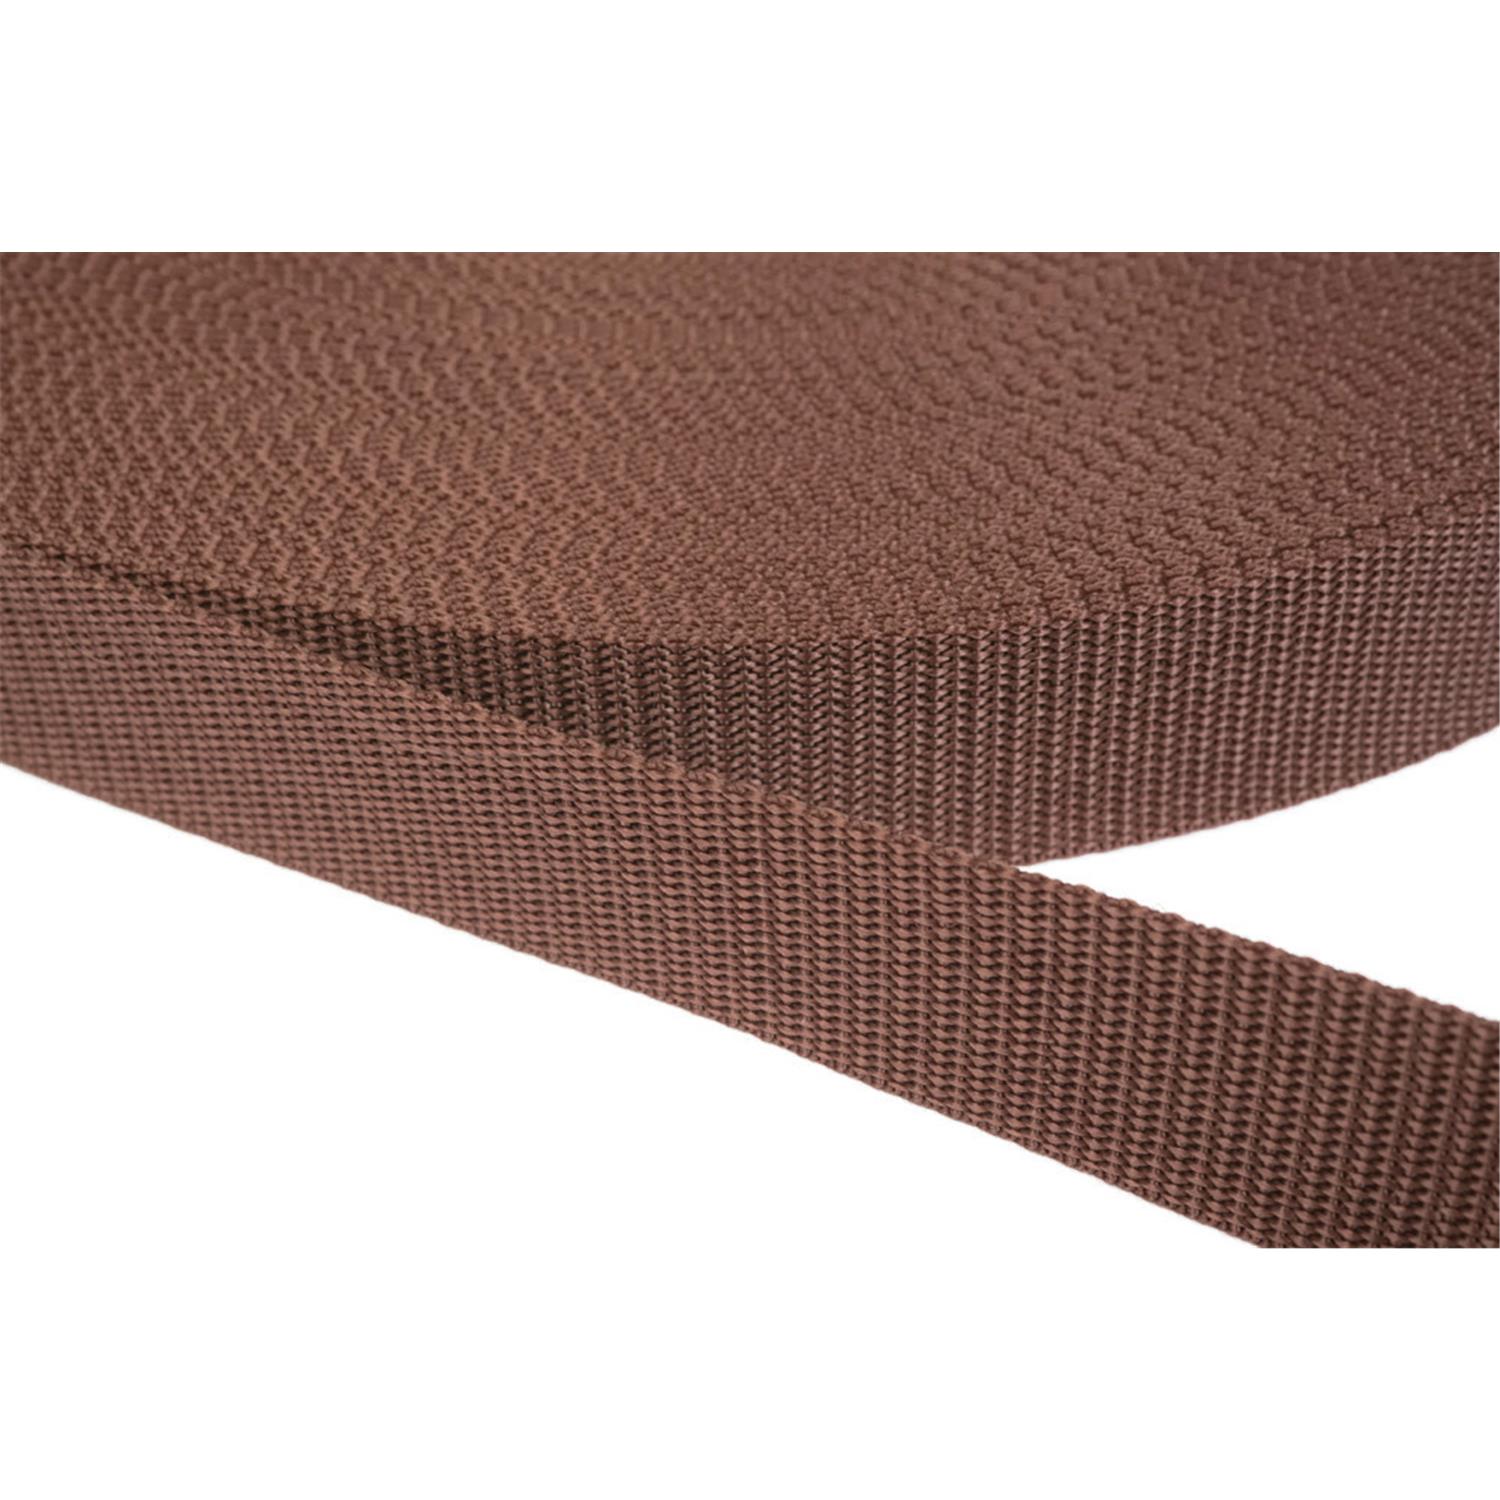 Gurtband 40mm breit aus Polypropylen in 41 Farben 07 - braun 50 Meter